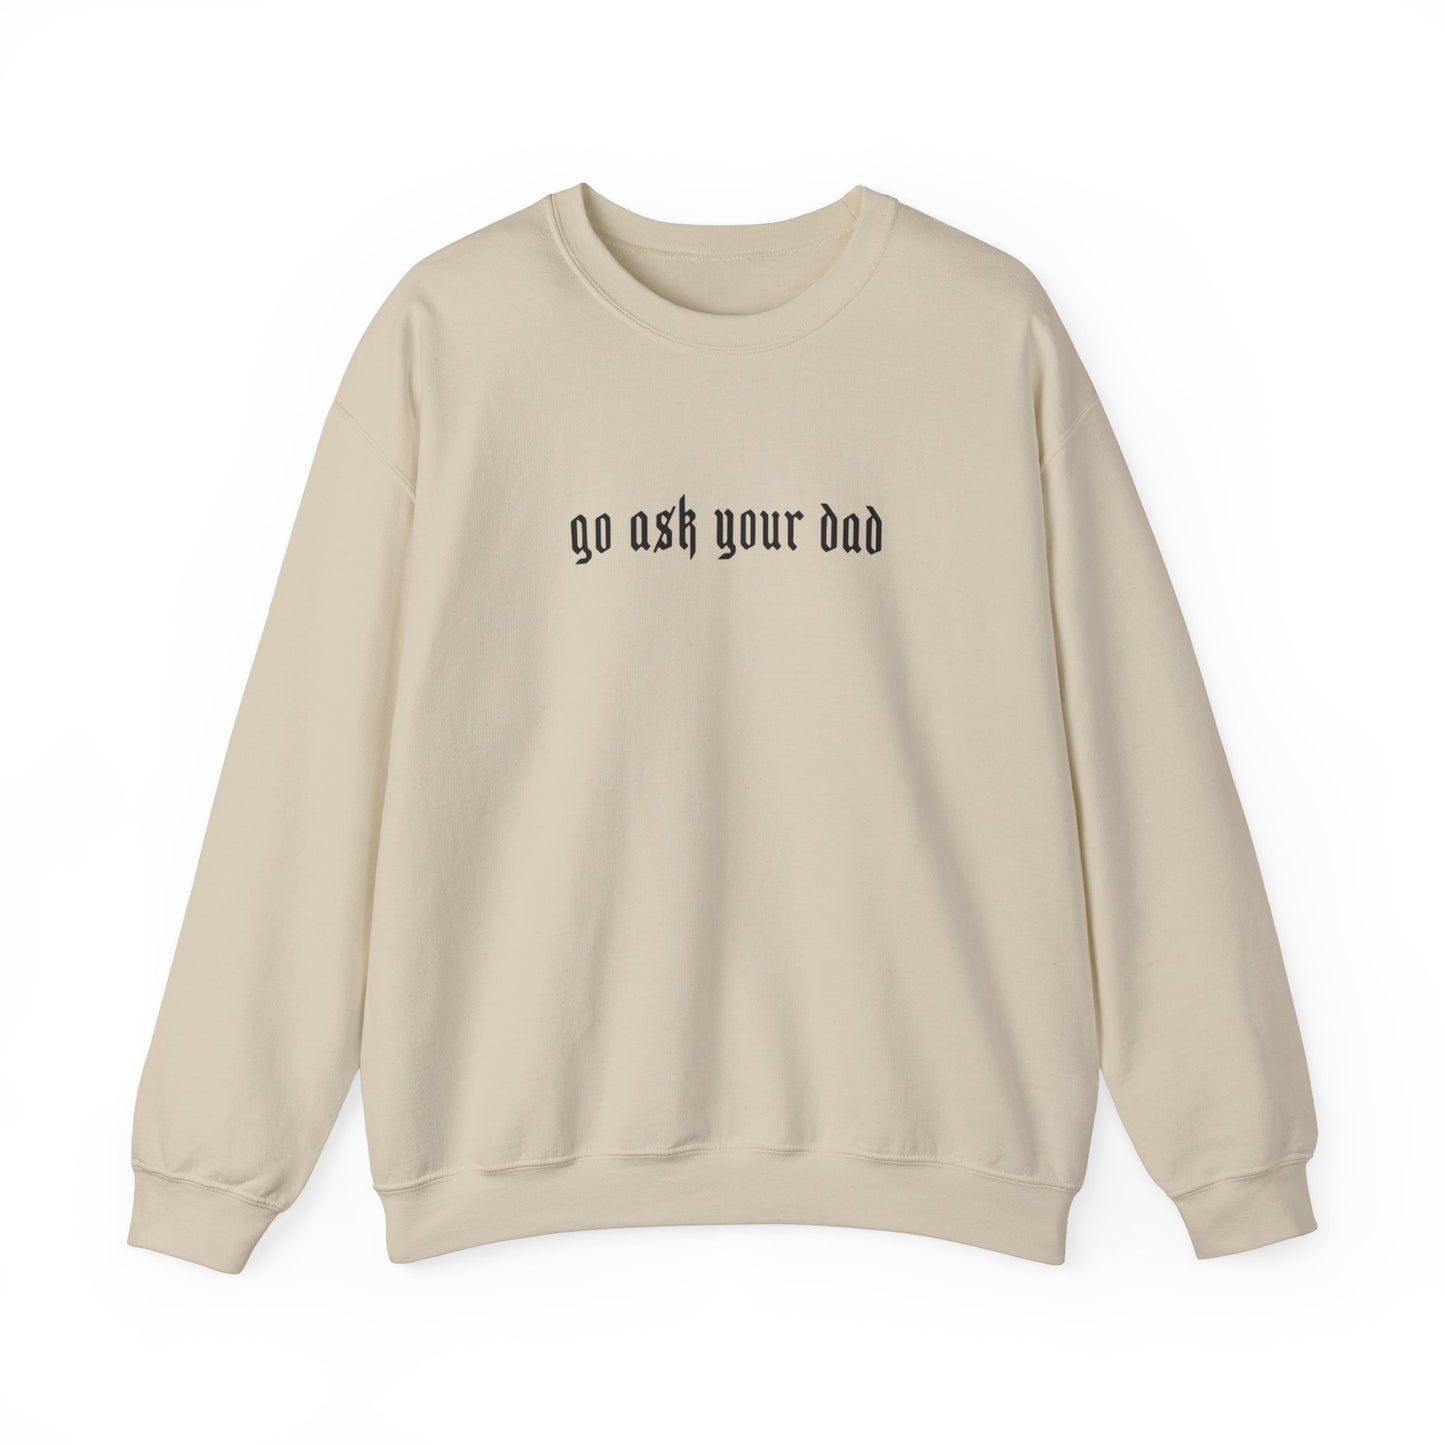 Go Ask your dad Crewneck sweatshirt